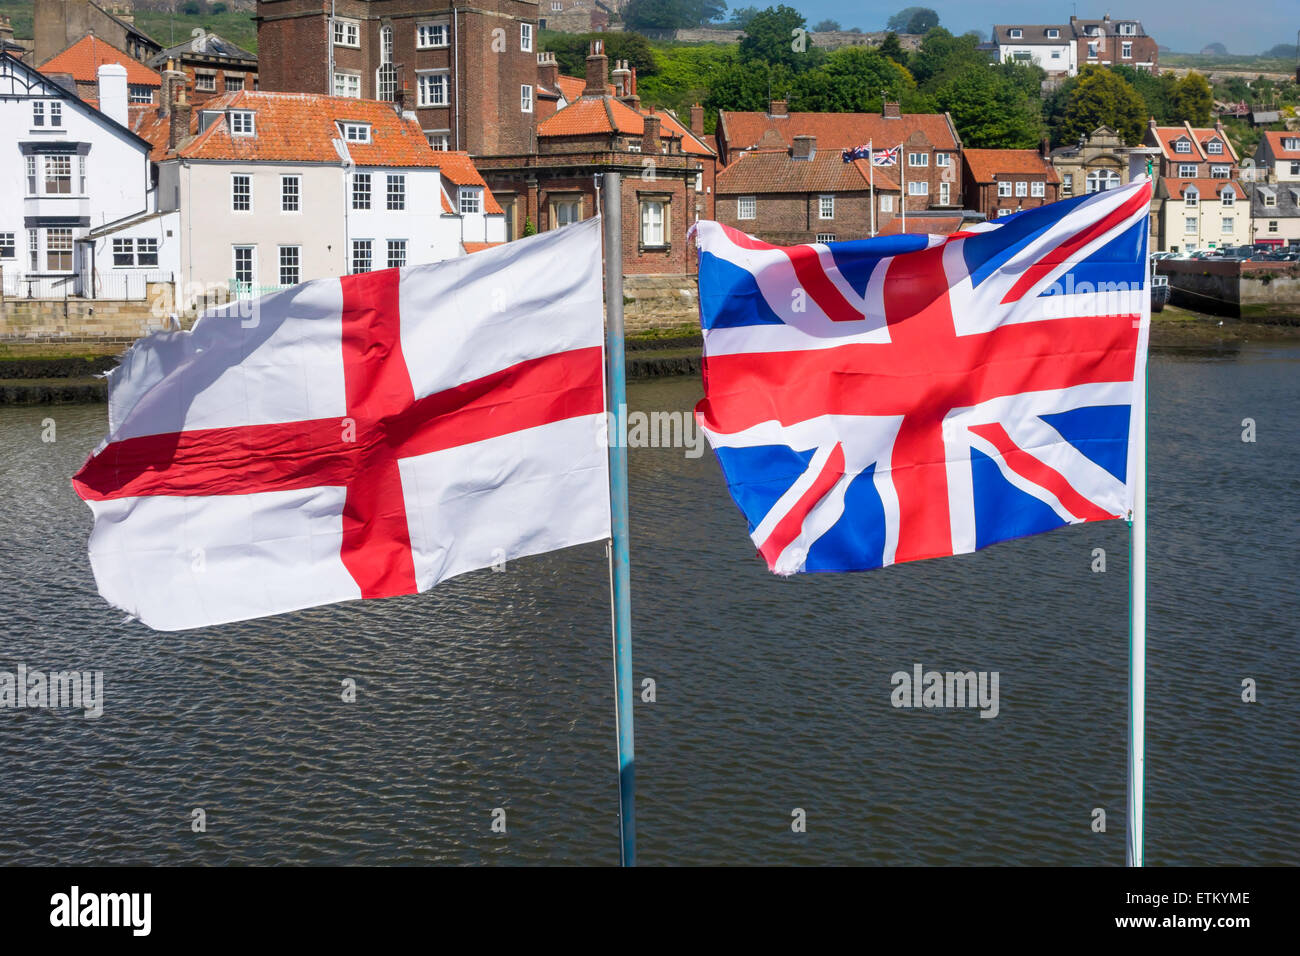 Die Flagge Grossbritannien Und England Flagge St Georgs Kreuz Fliegen Nebeneinander Im Hafen Von Whitby Stockfotografie Alamy